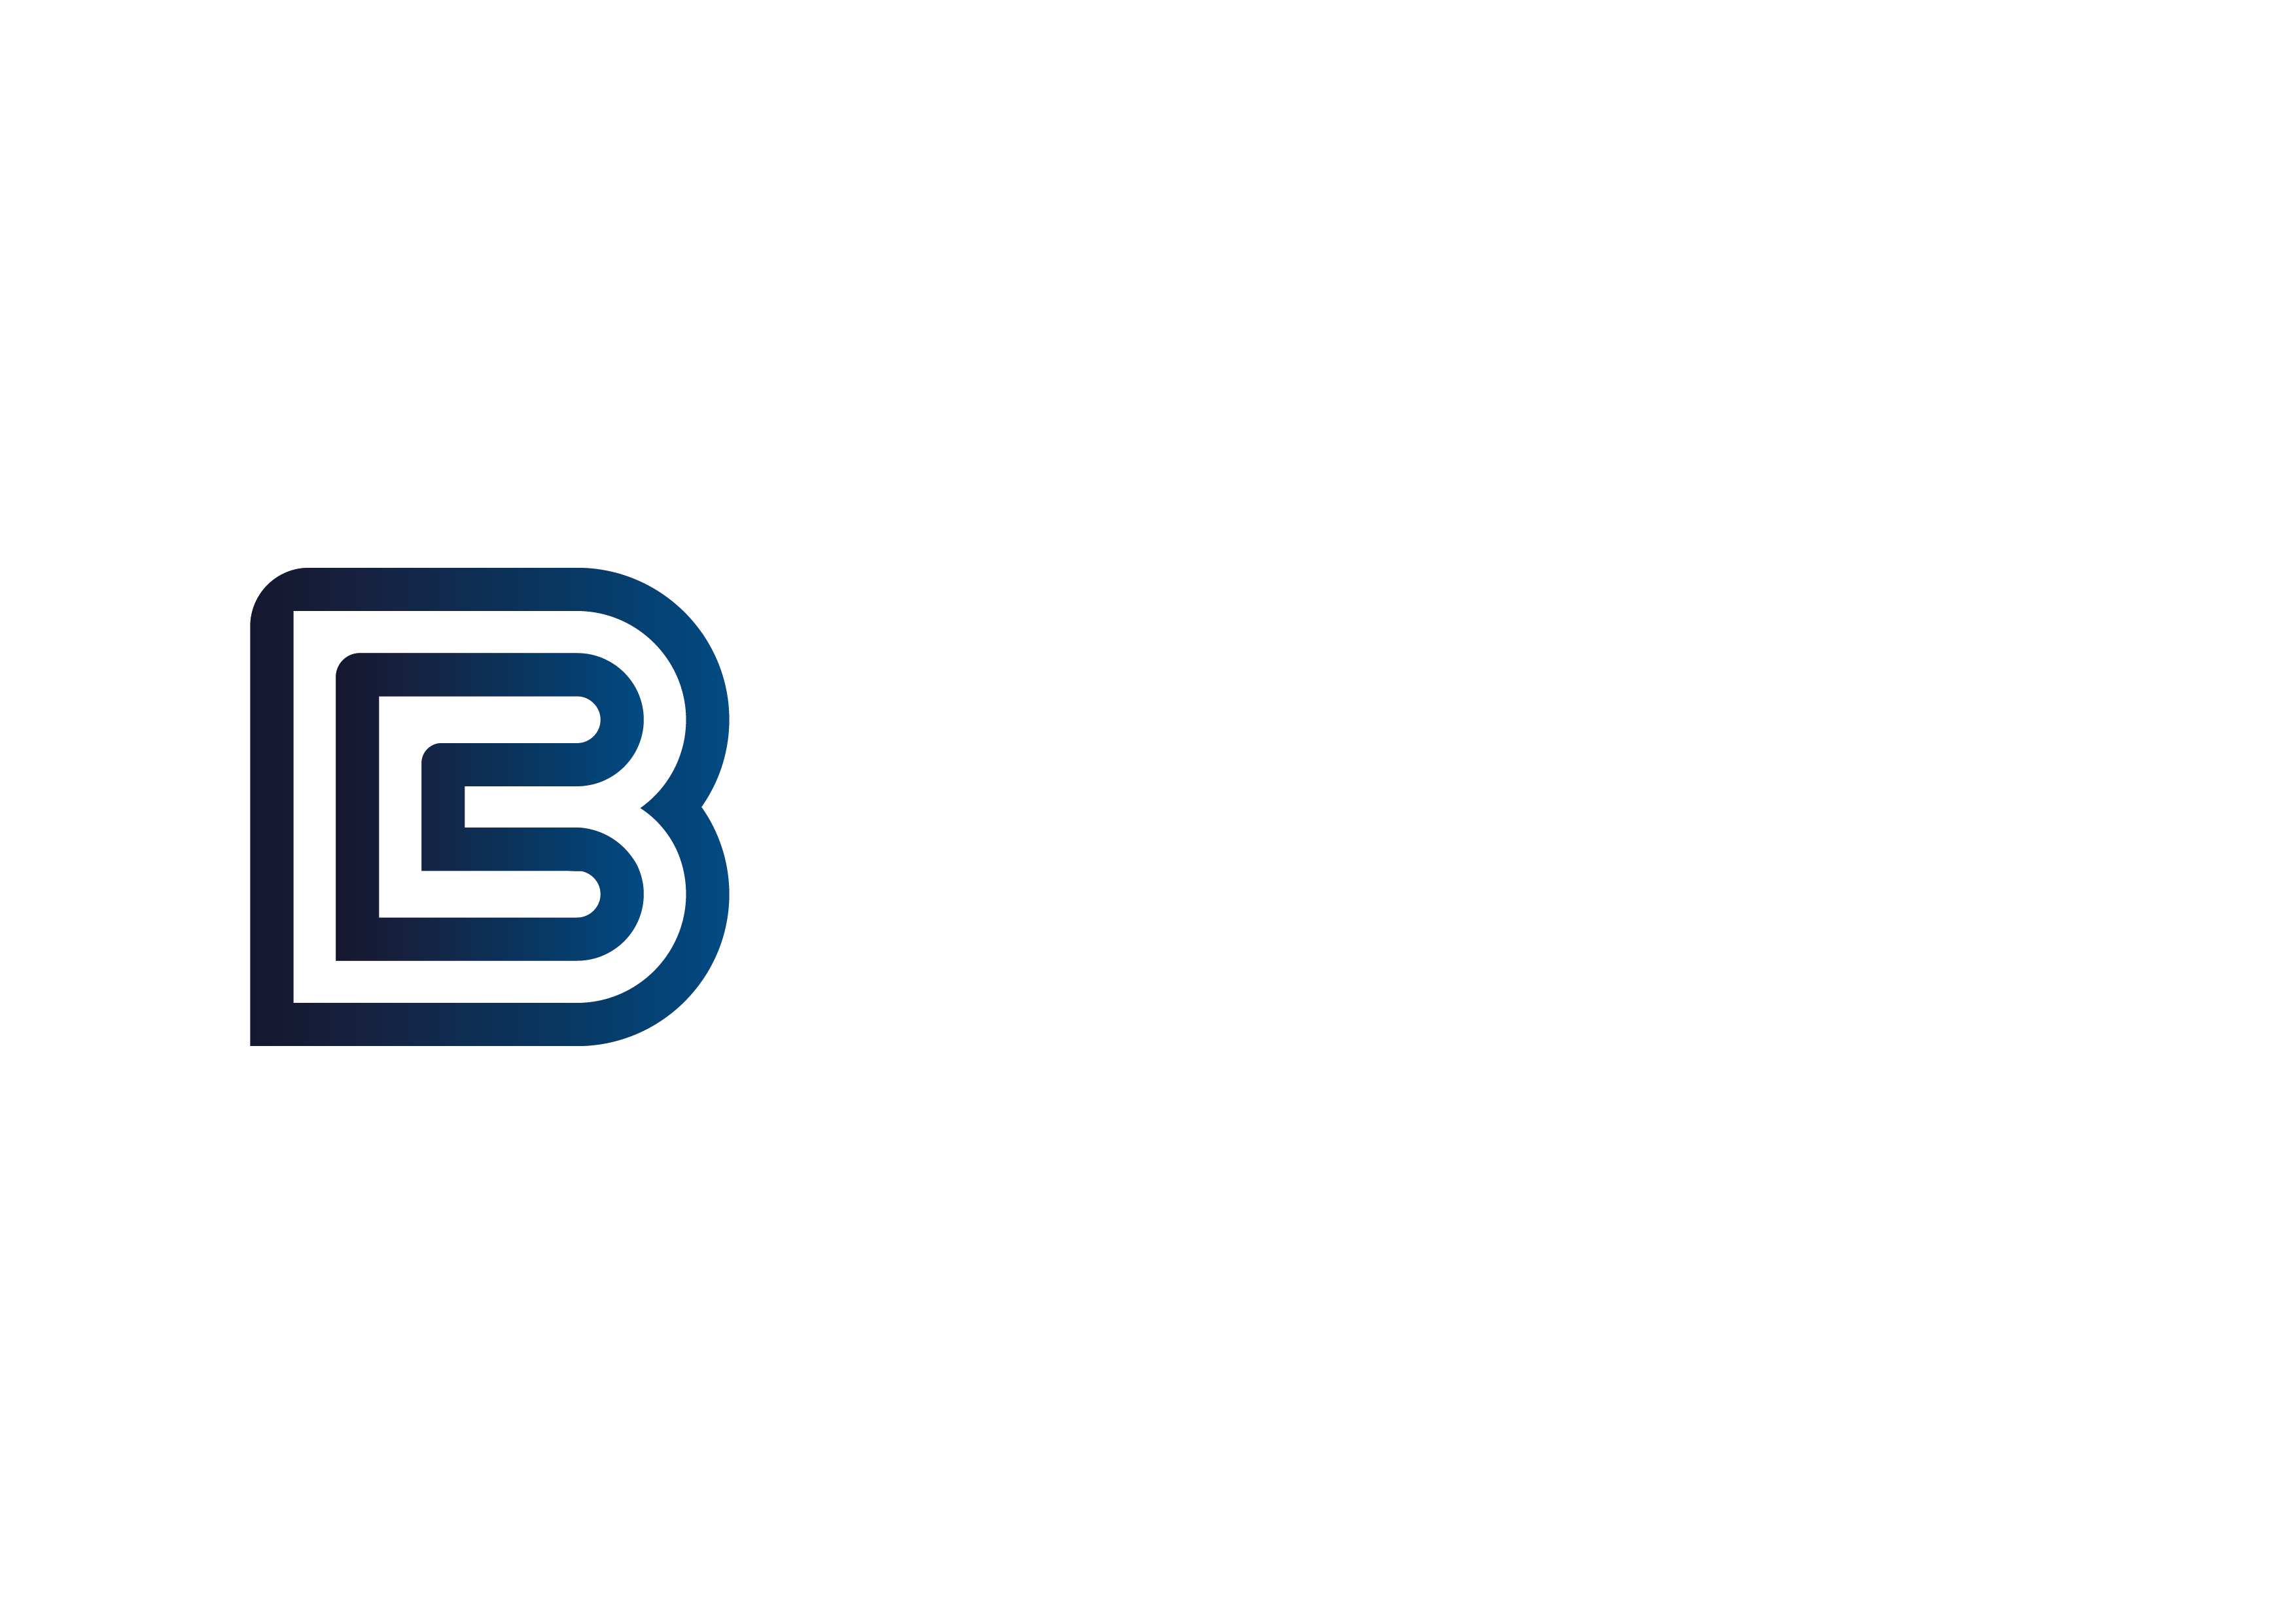 BISTAR Consulting-TELECOMUNICACIONES y MONITOREO